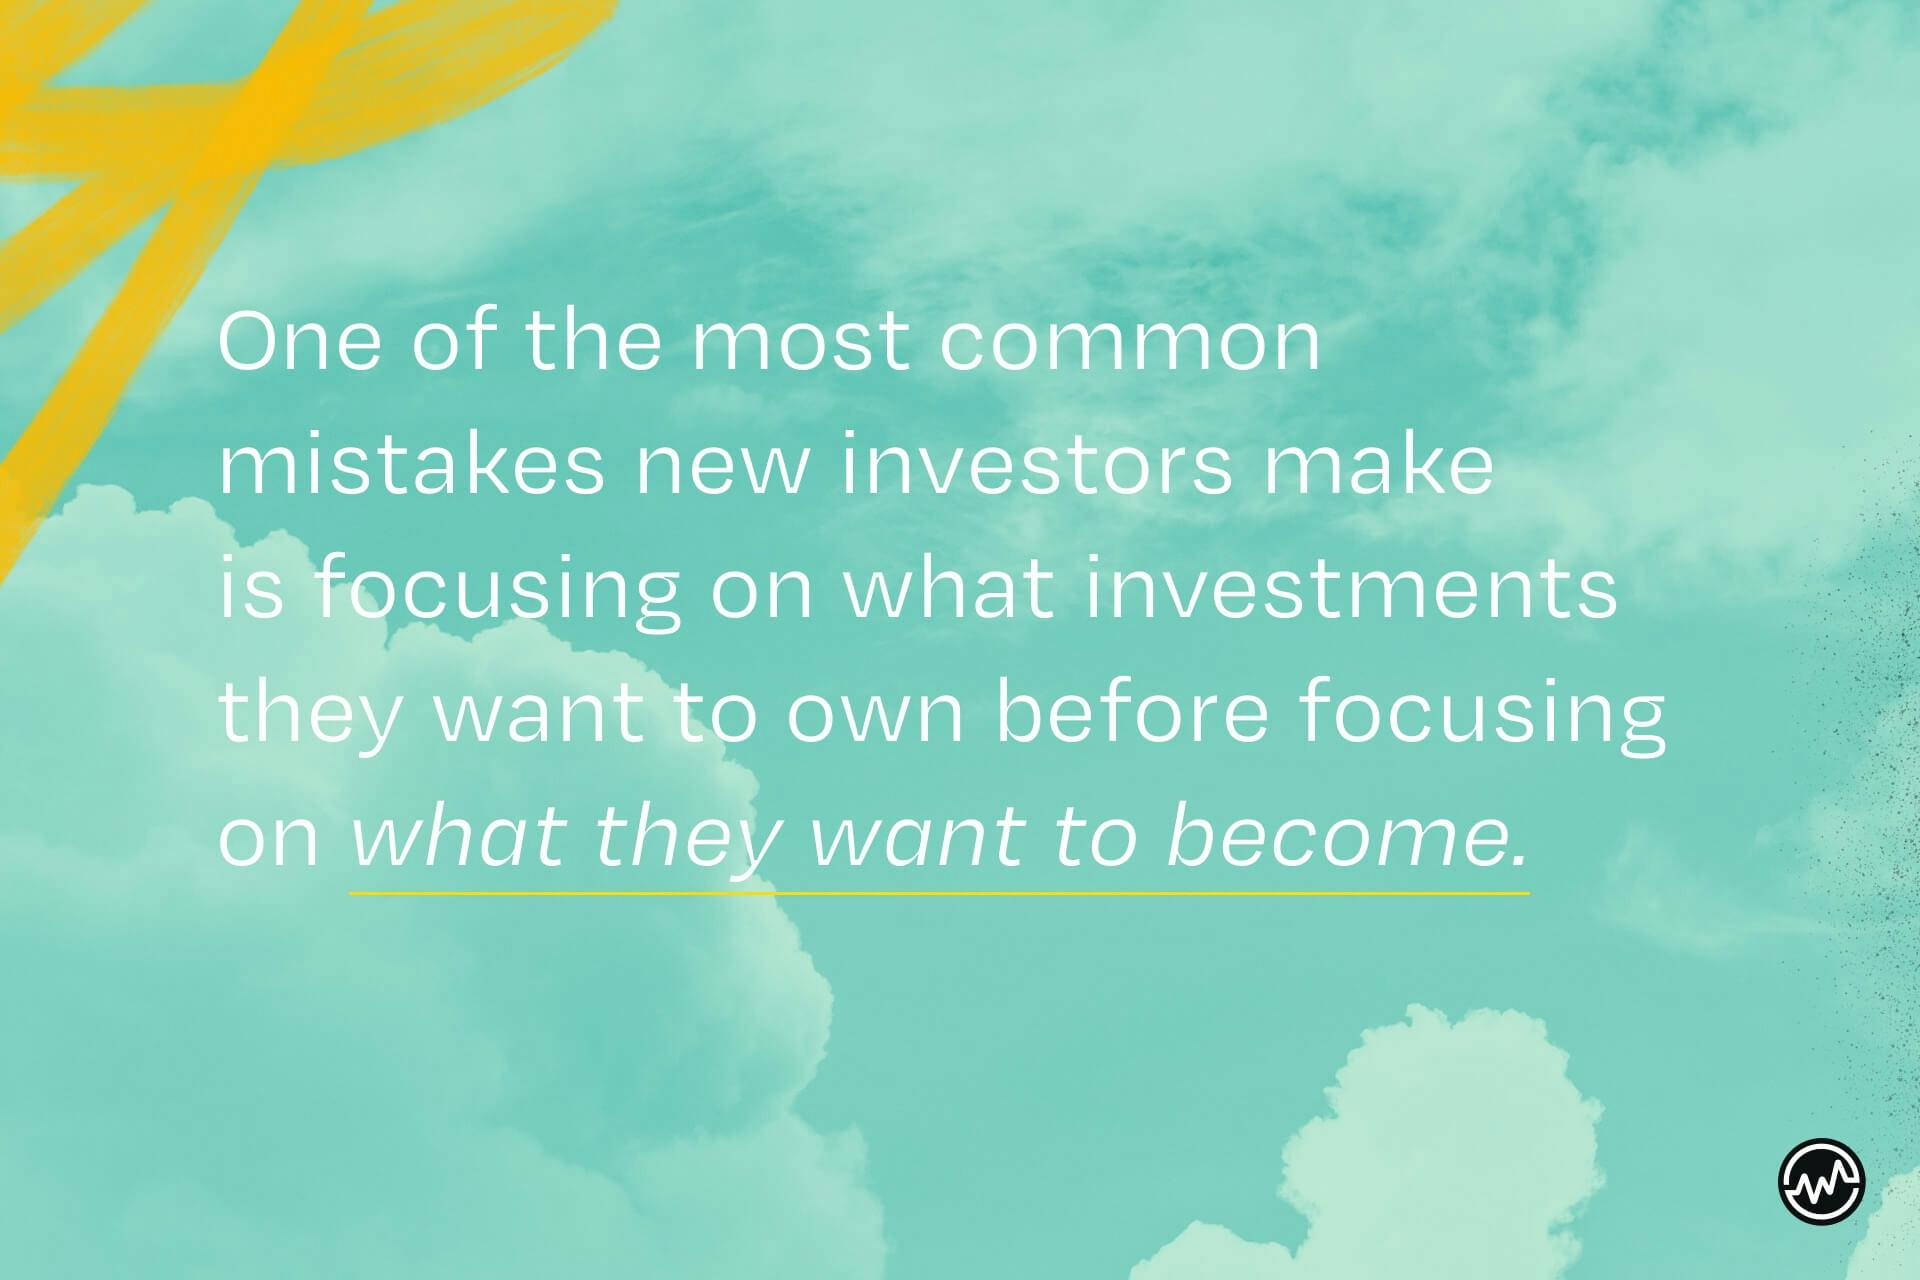 fokusera på vad du vill bli — inte vilka investeringar du vill äga